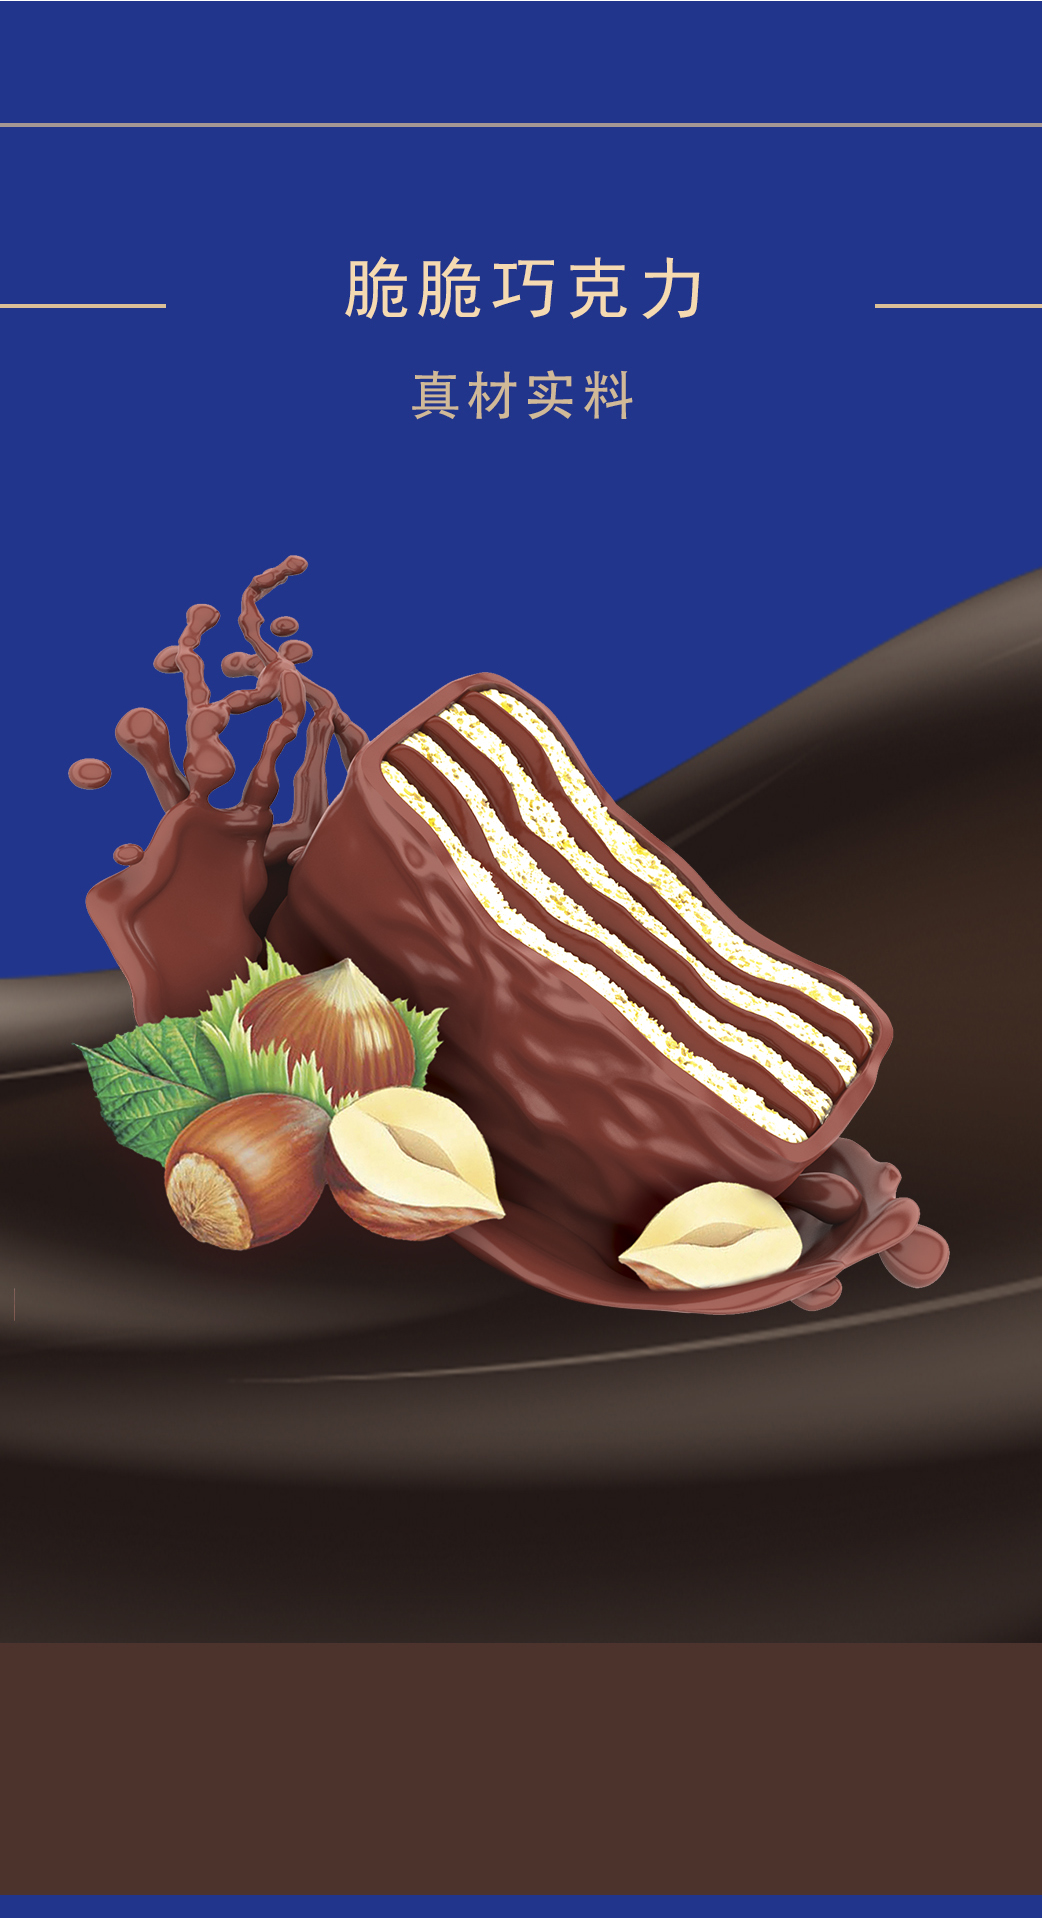 阿尔曼巴旦木巧克力 - 新疆阿尔曼食品集团有限责任公司